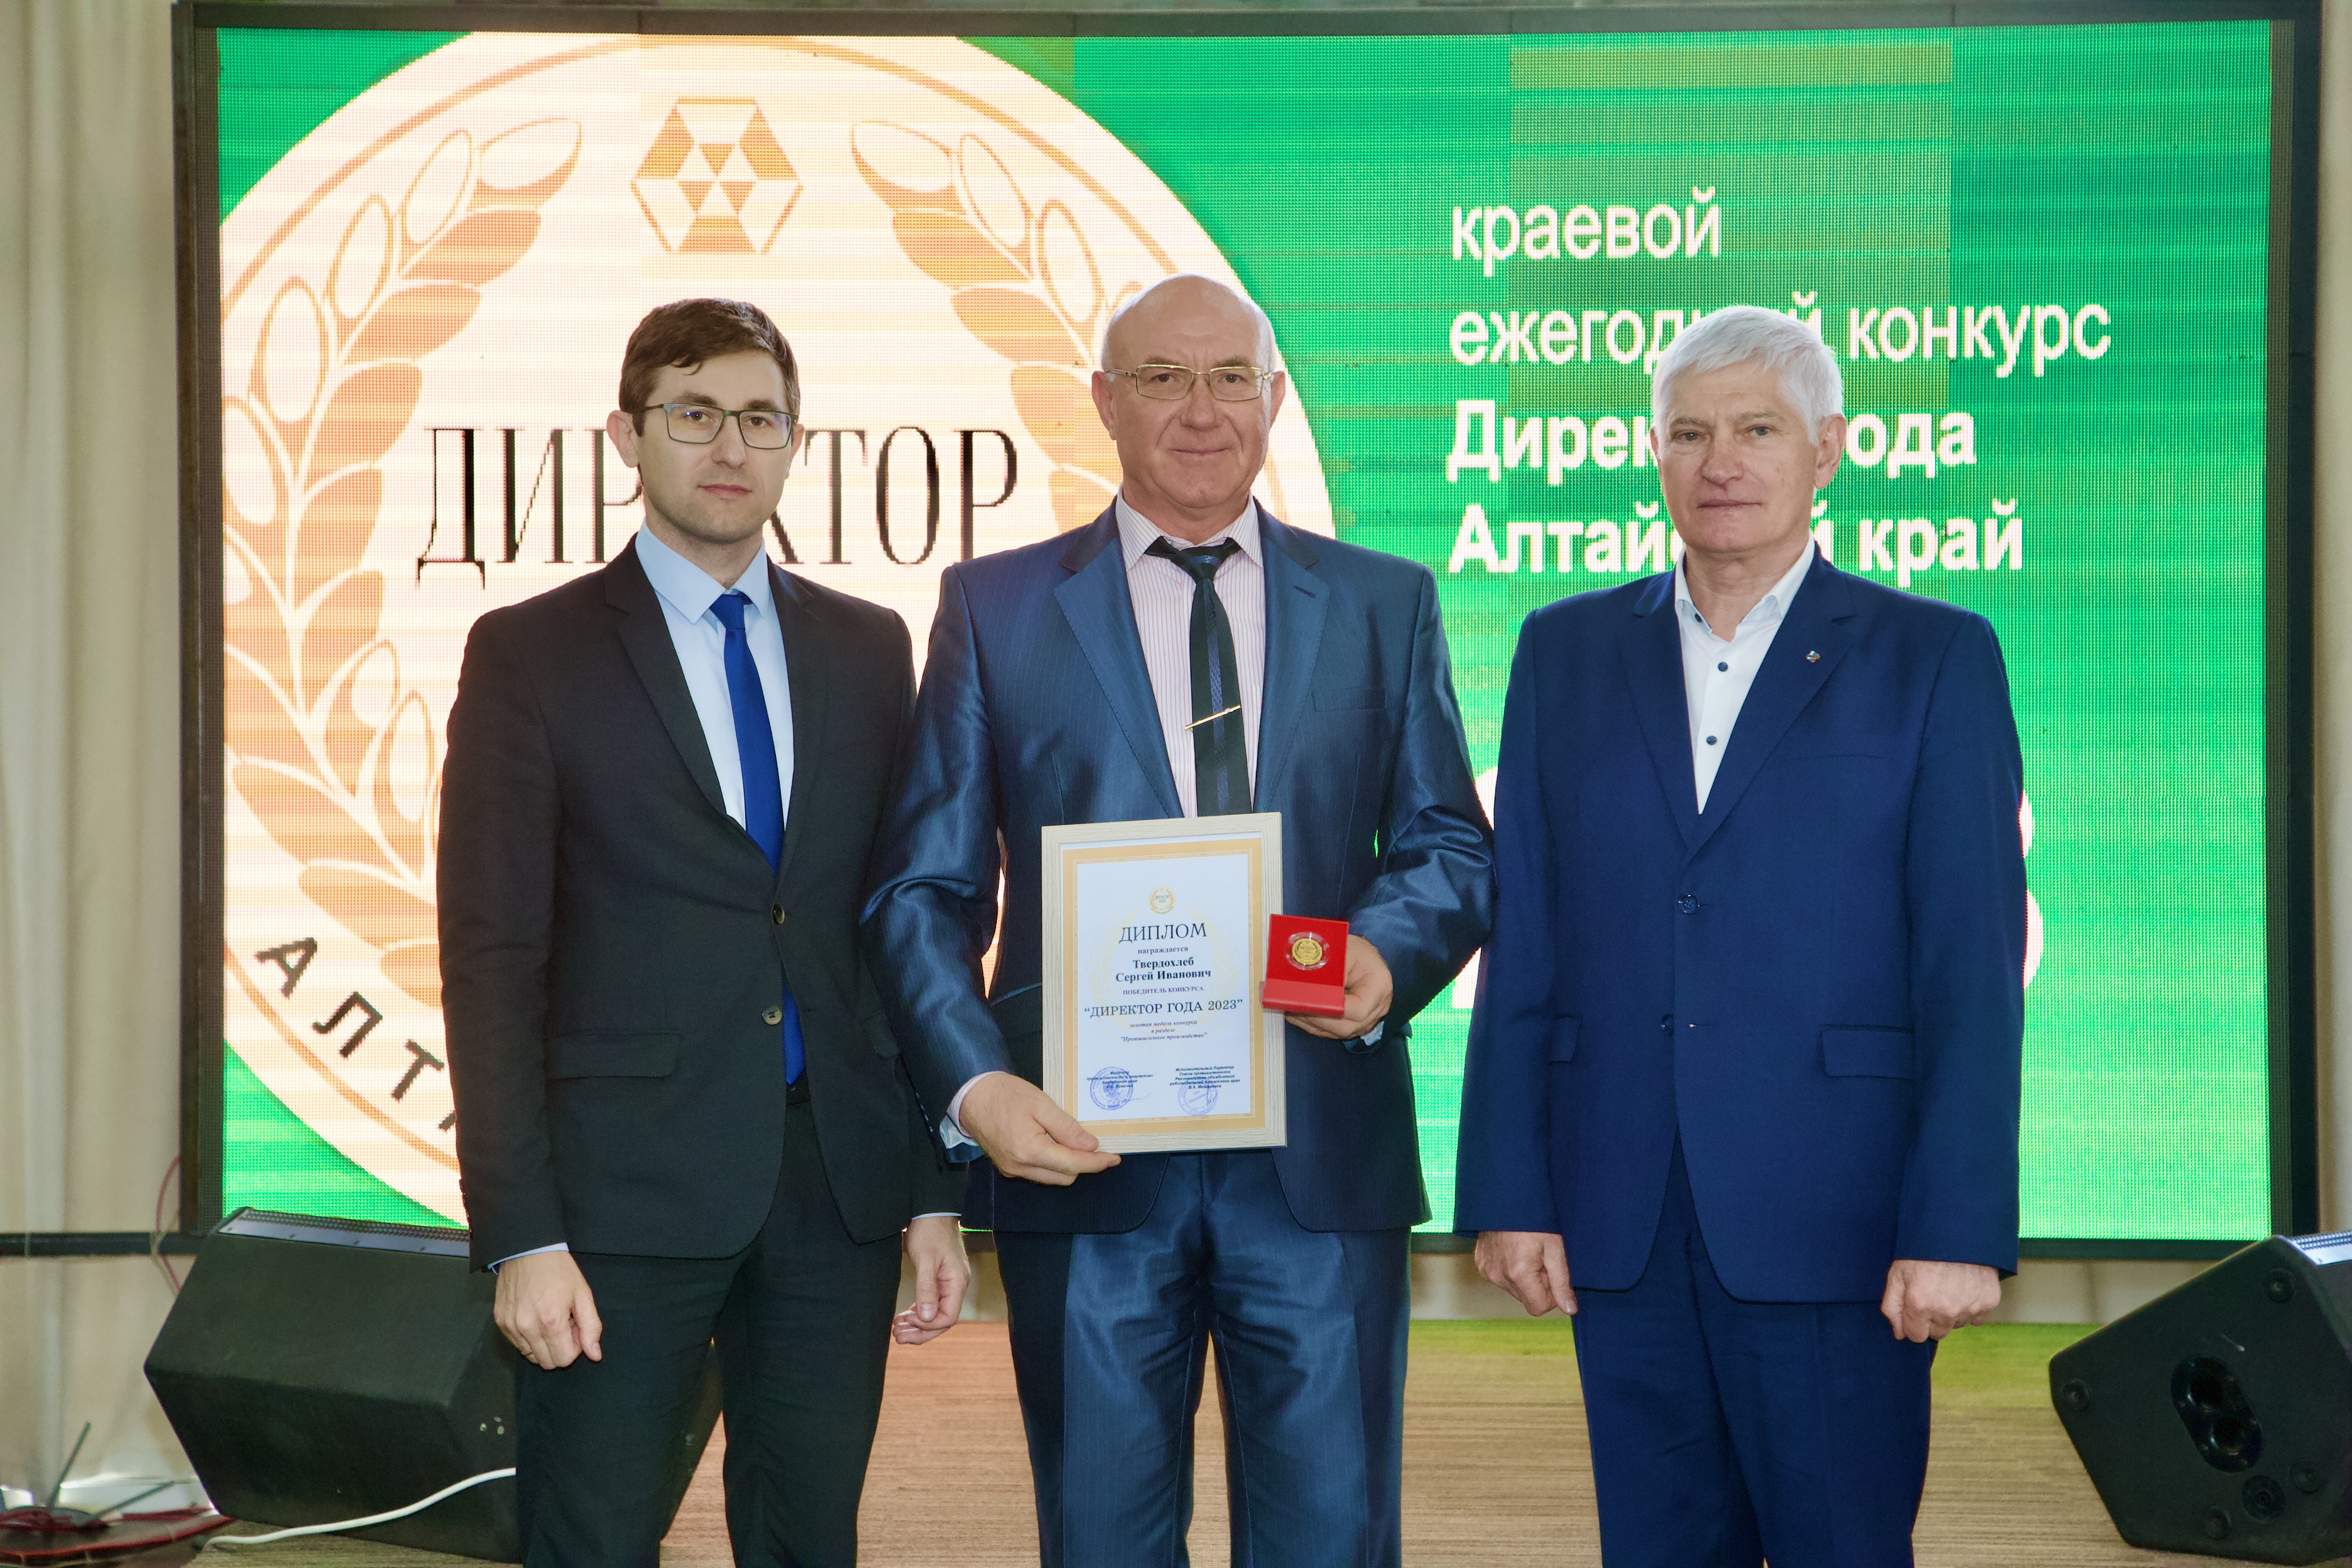 Руководитель компании "Агроцентр" С.И. Твердохлеб стал победителем конкурса "Директор-года"